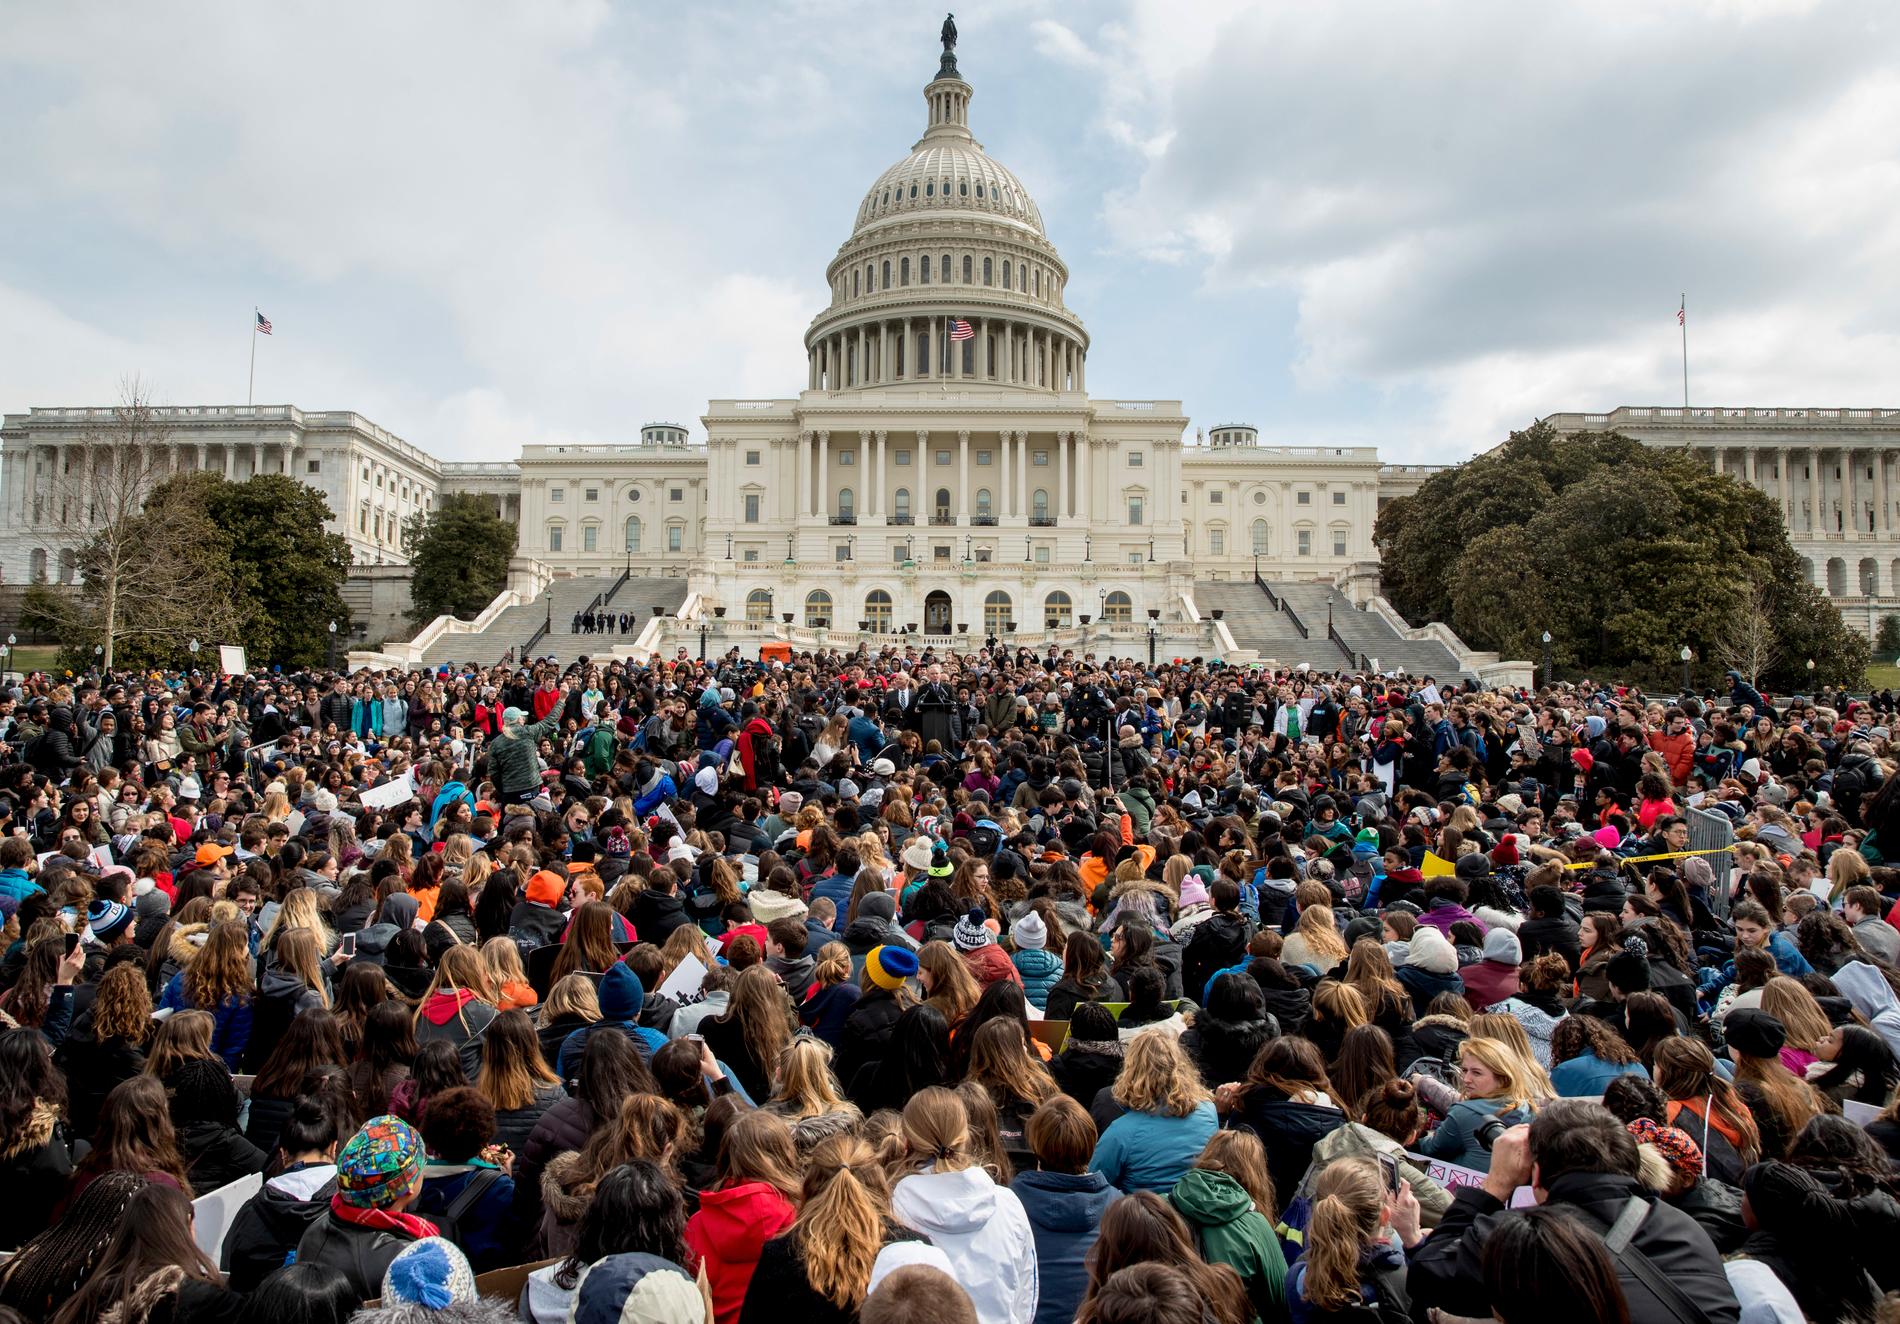 En jättedemonstration mot vapenrelaterat våld i USA:s huvudstad Washington DC i mars i år.